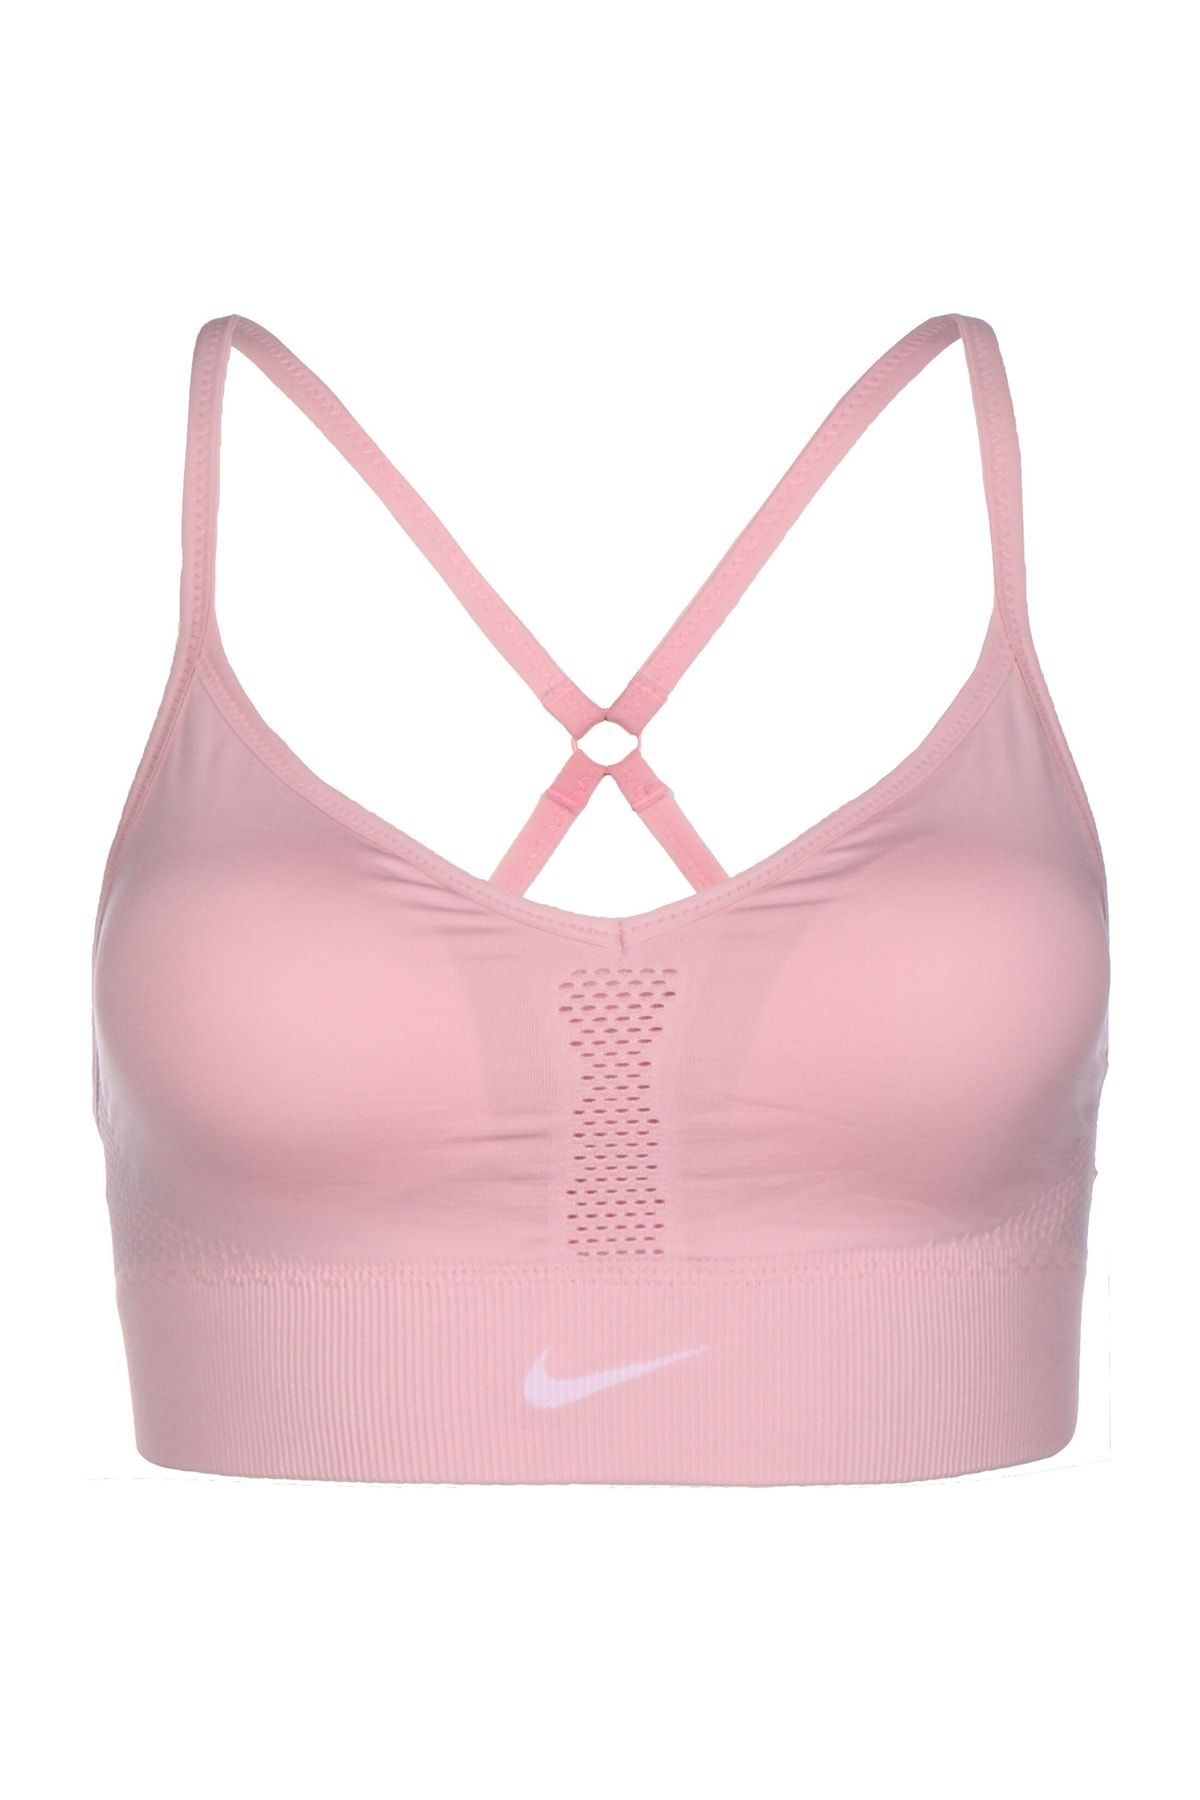 Nike Sportswear Women's Pink Printed Bra Sports Bra - Trendyol